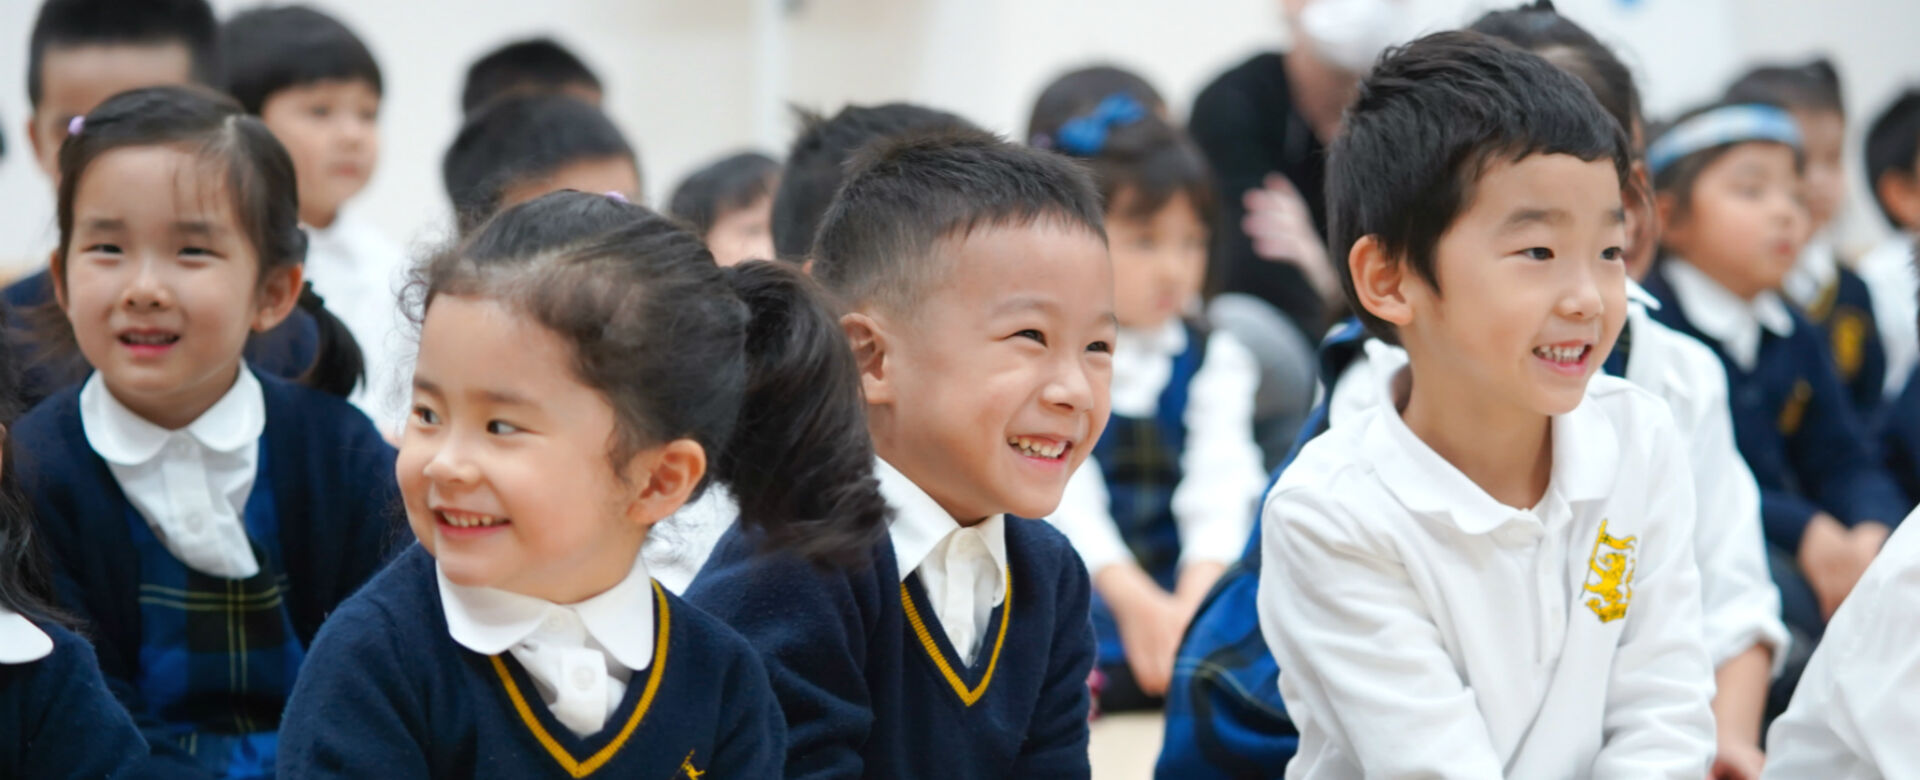 上海惠立幼儿园学习环境